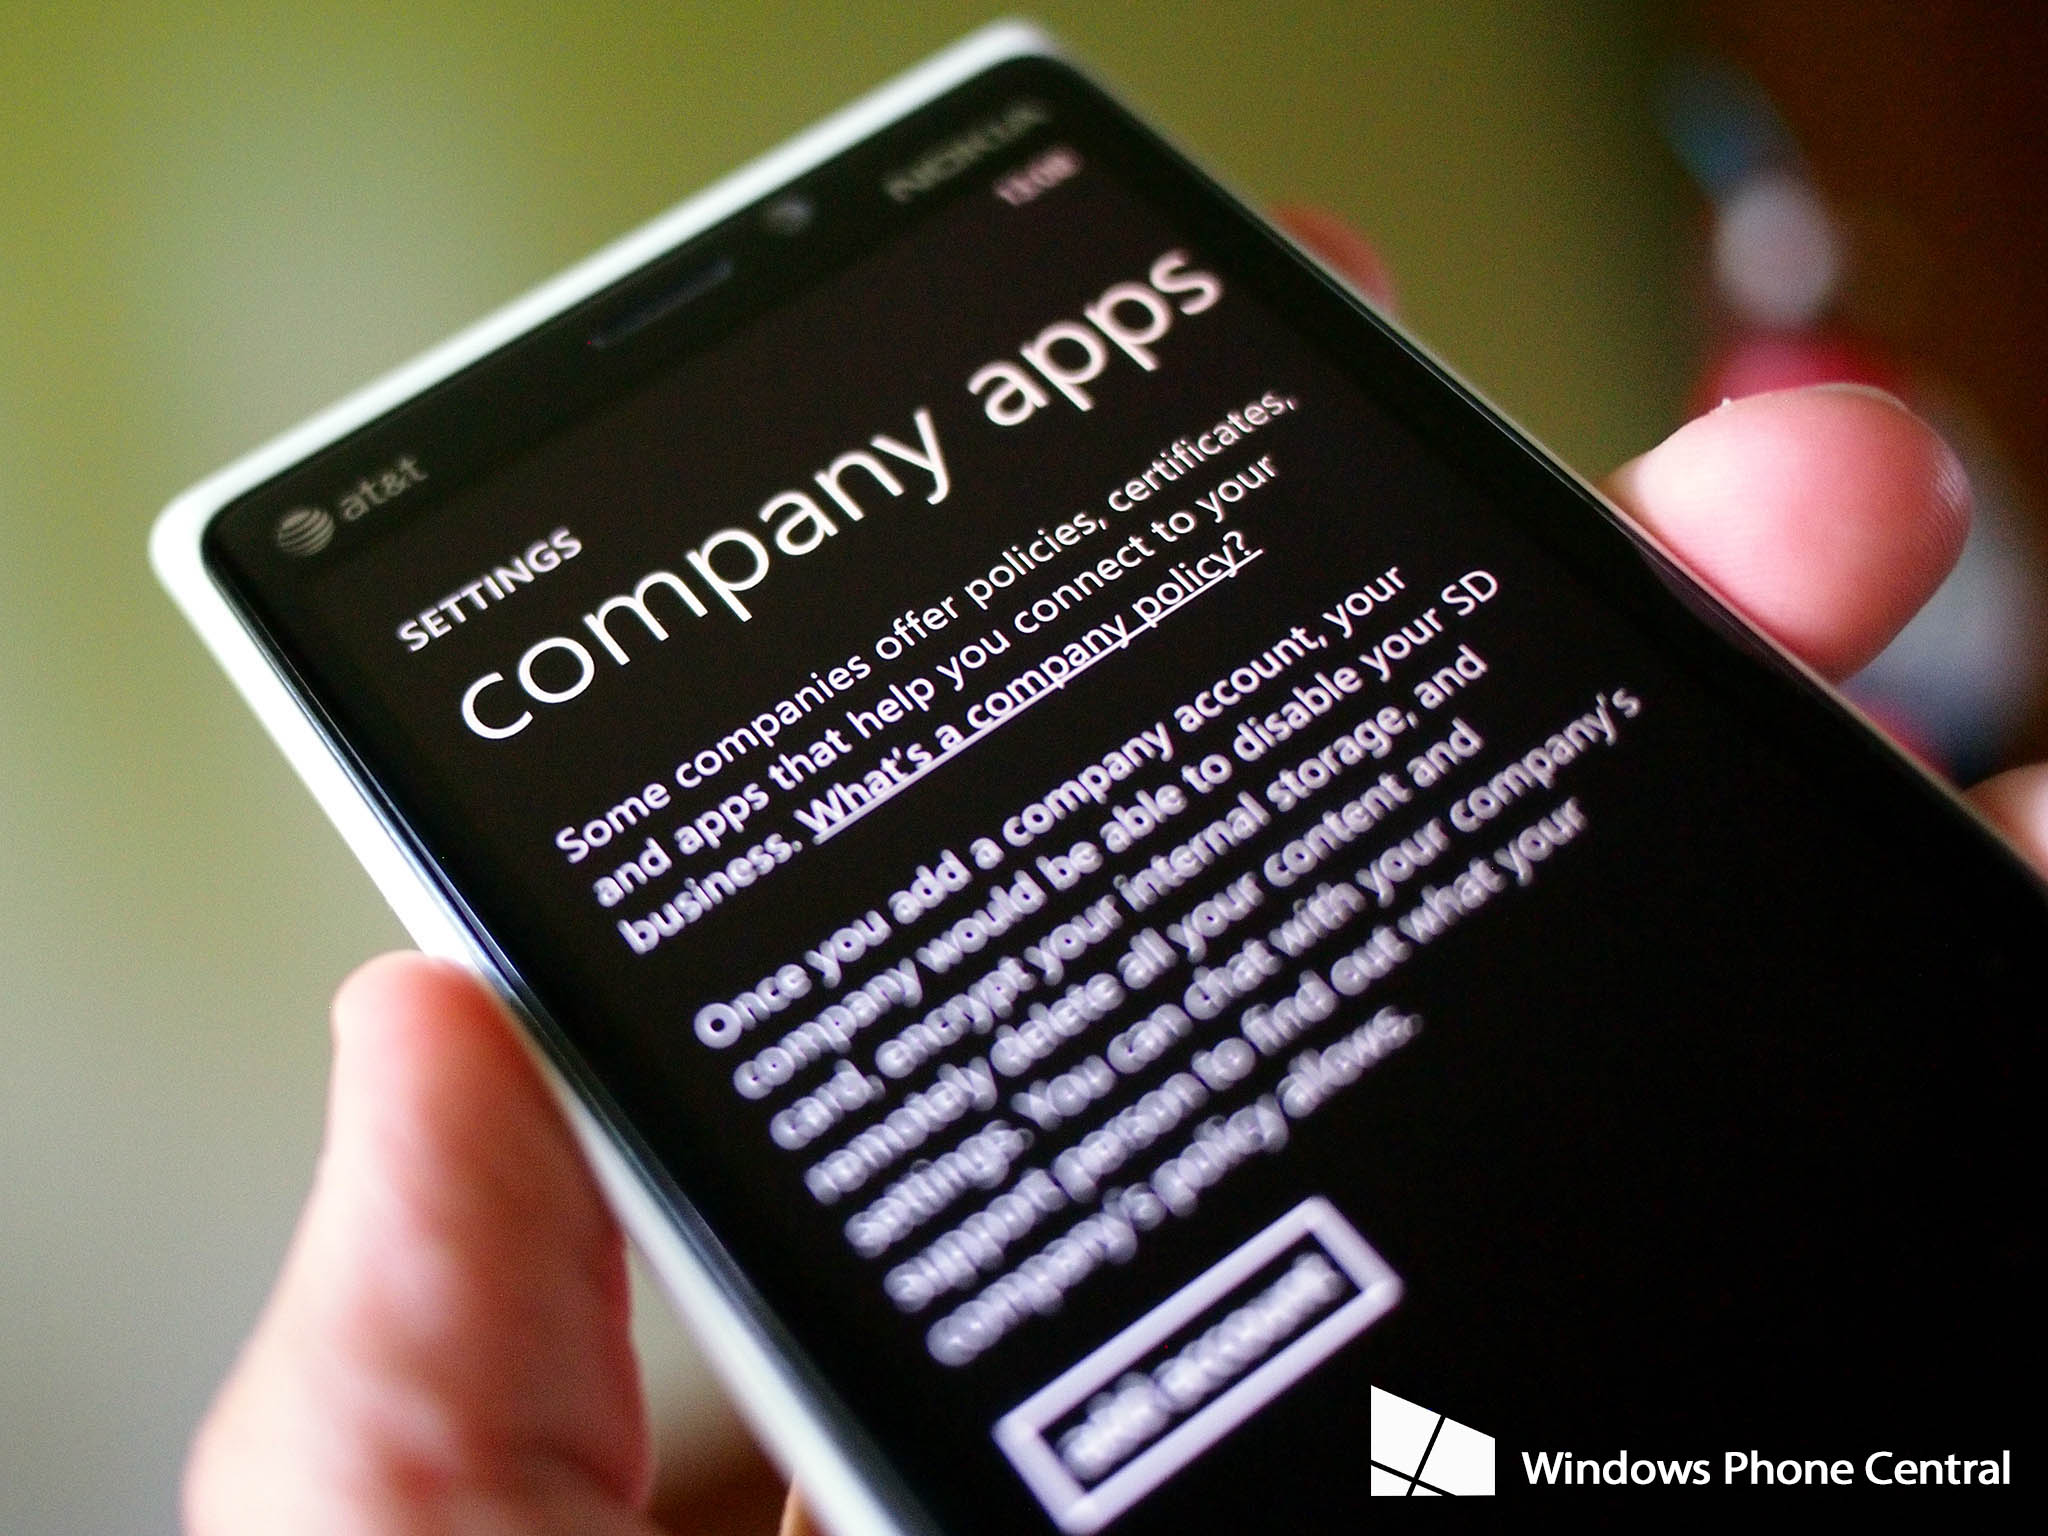 Lumia 920 company apps